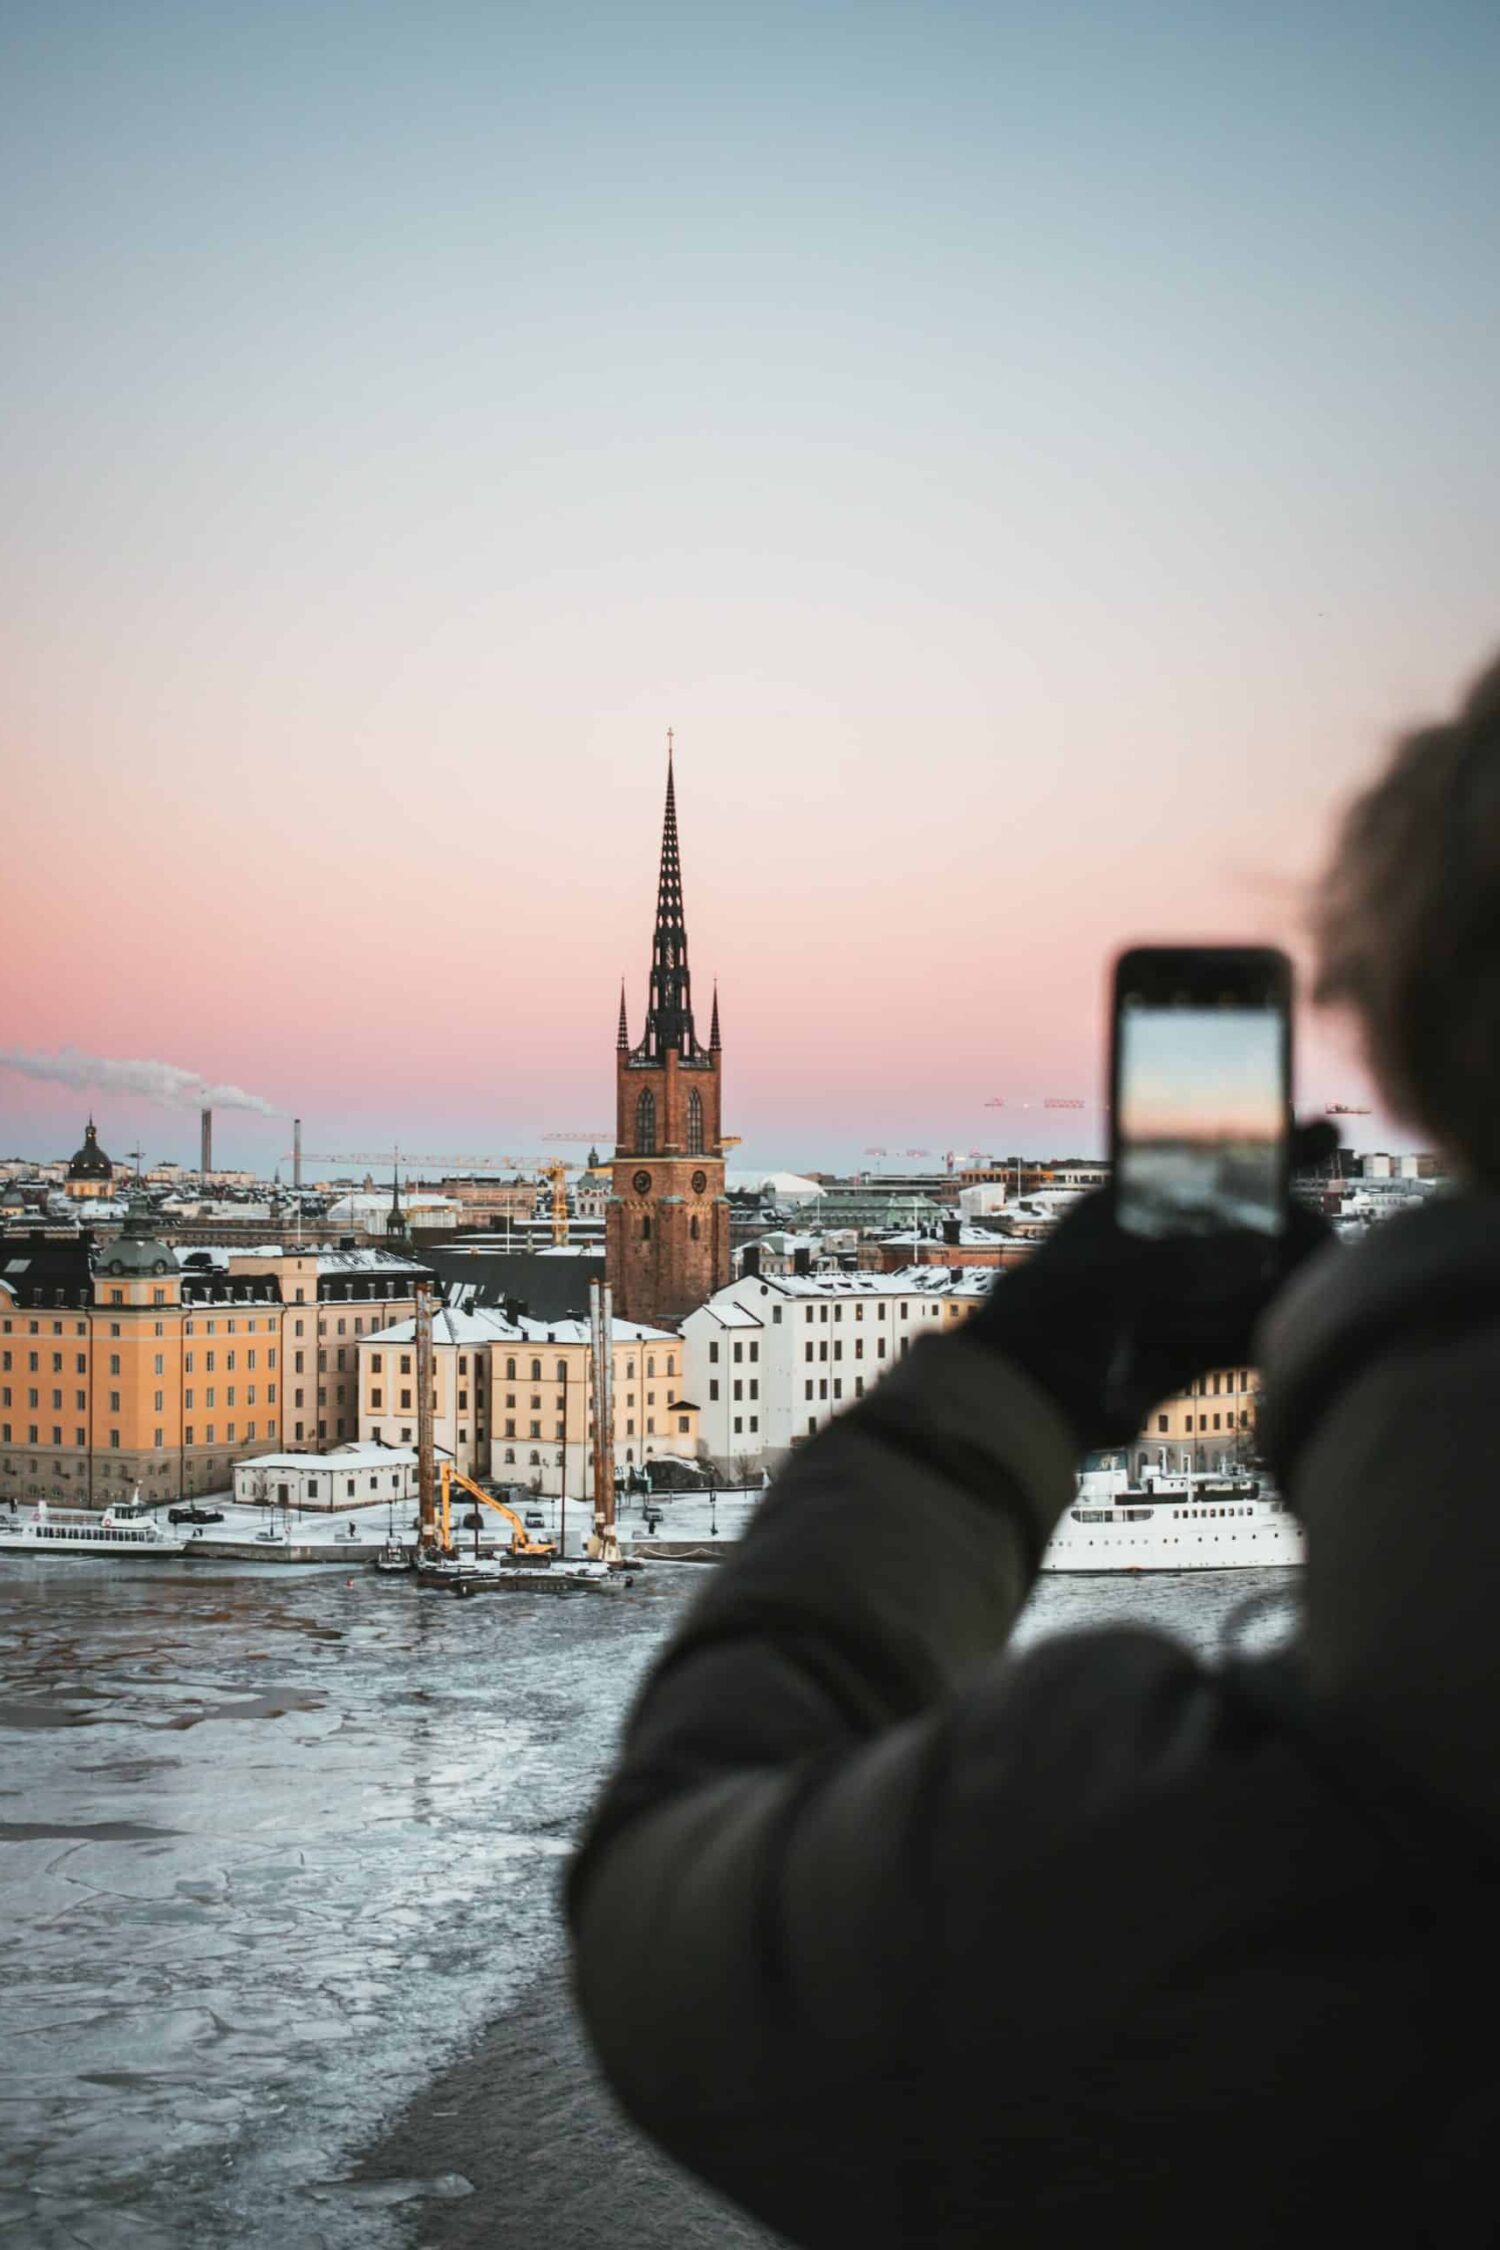 Homem usando blusa de frio cinza escuro e luva preta, segurando o celular e fotografando a região de Estocolmo, com prédios históricos, torre e lago congelado